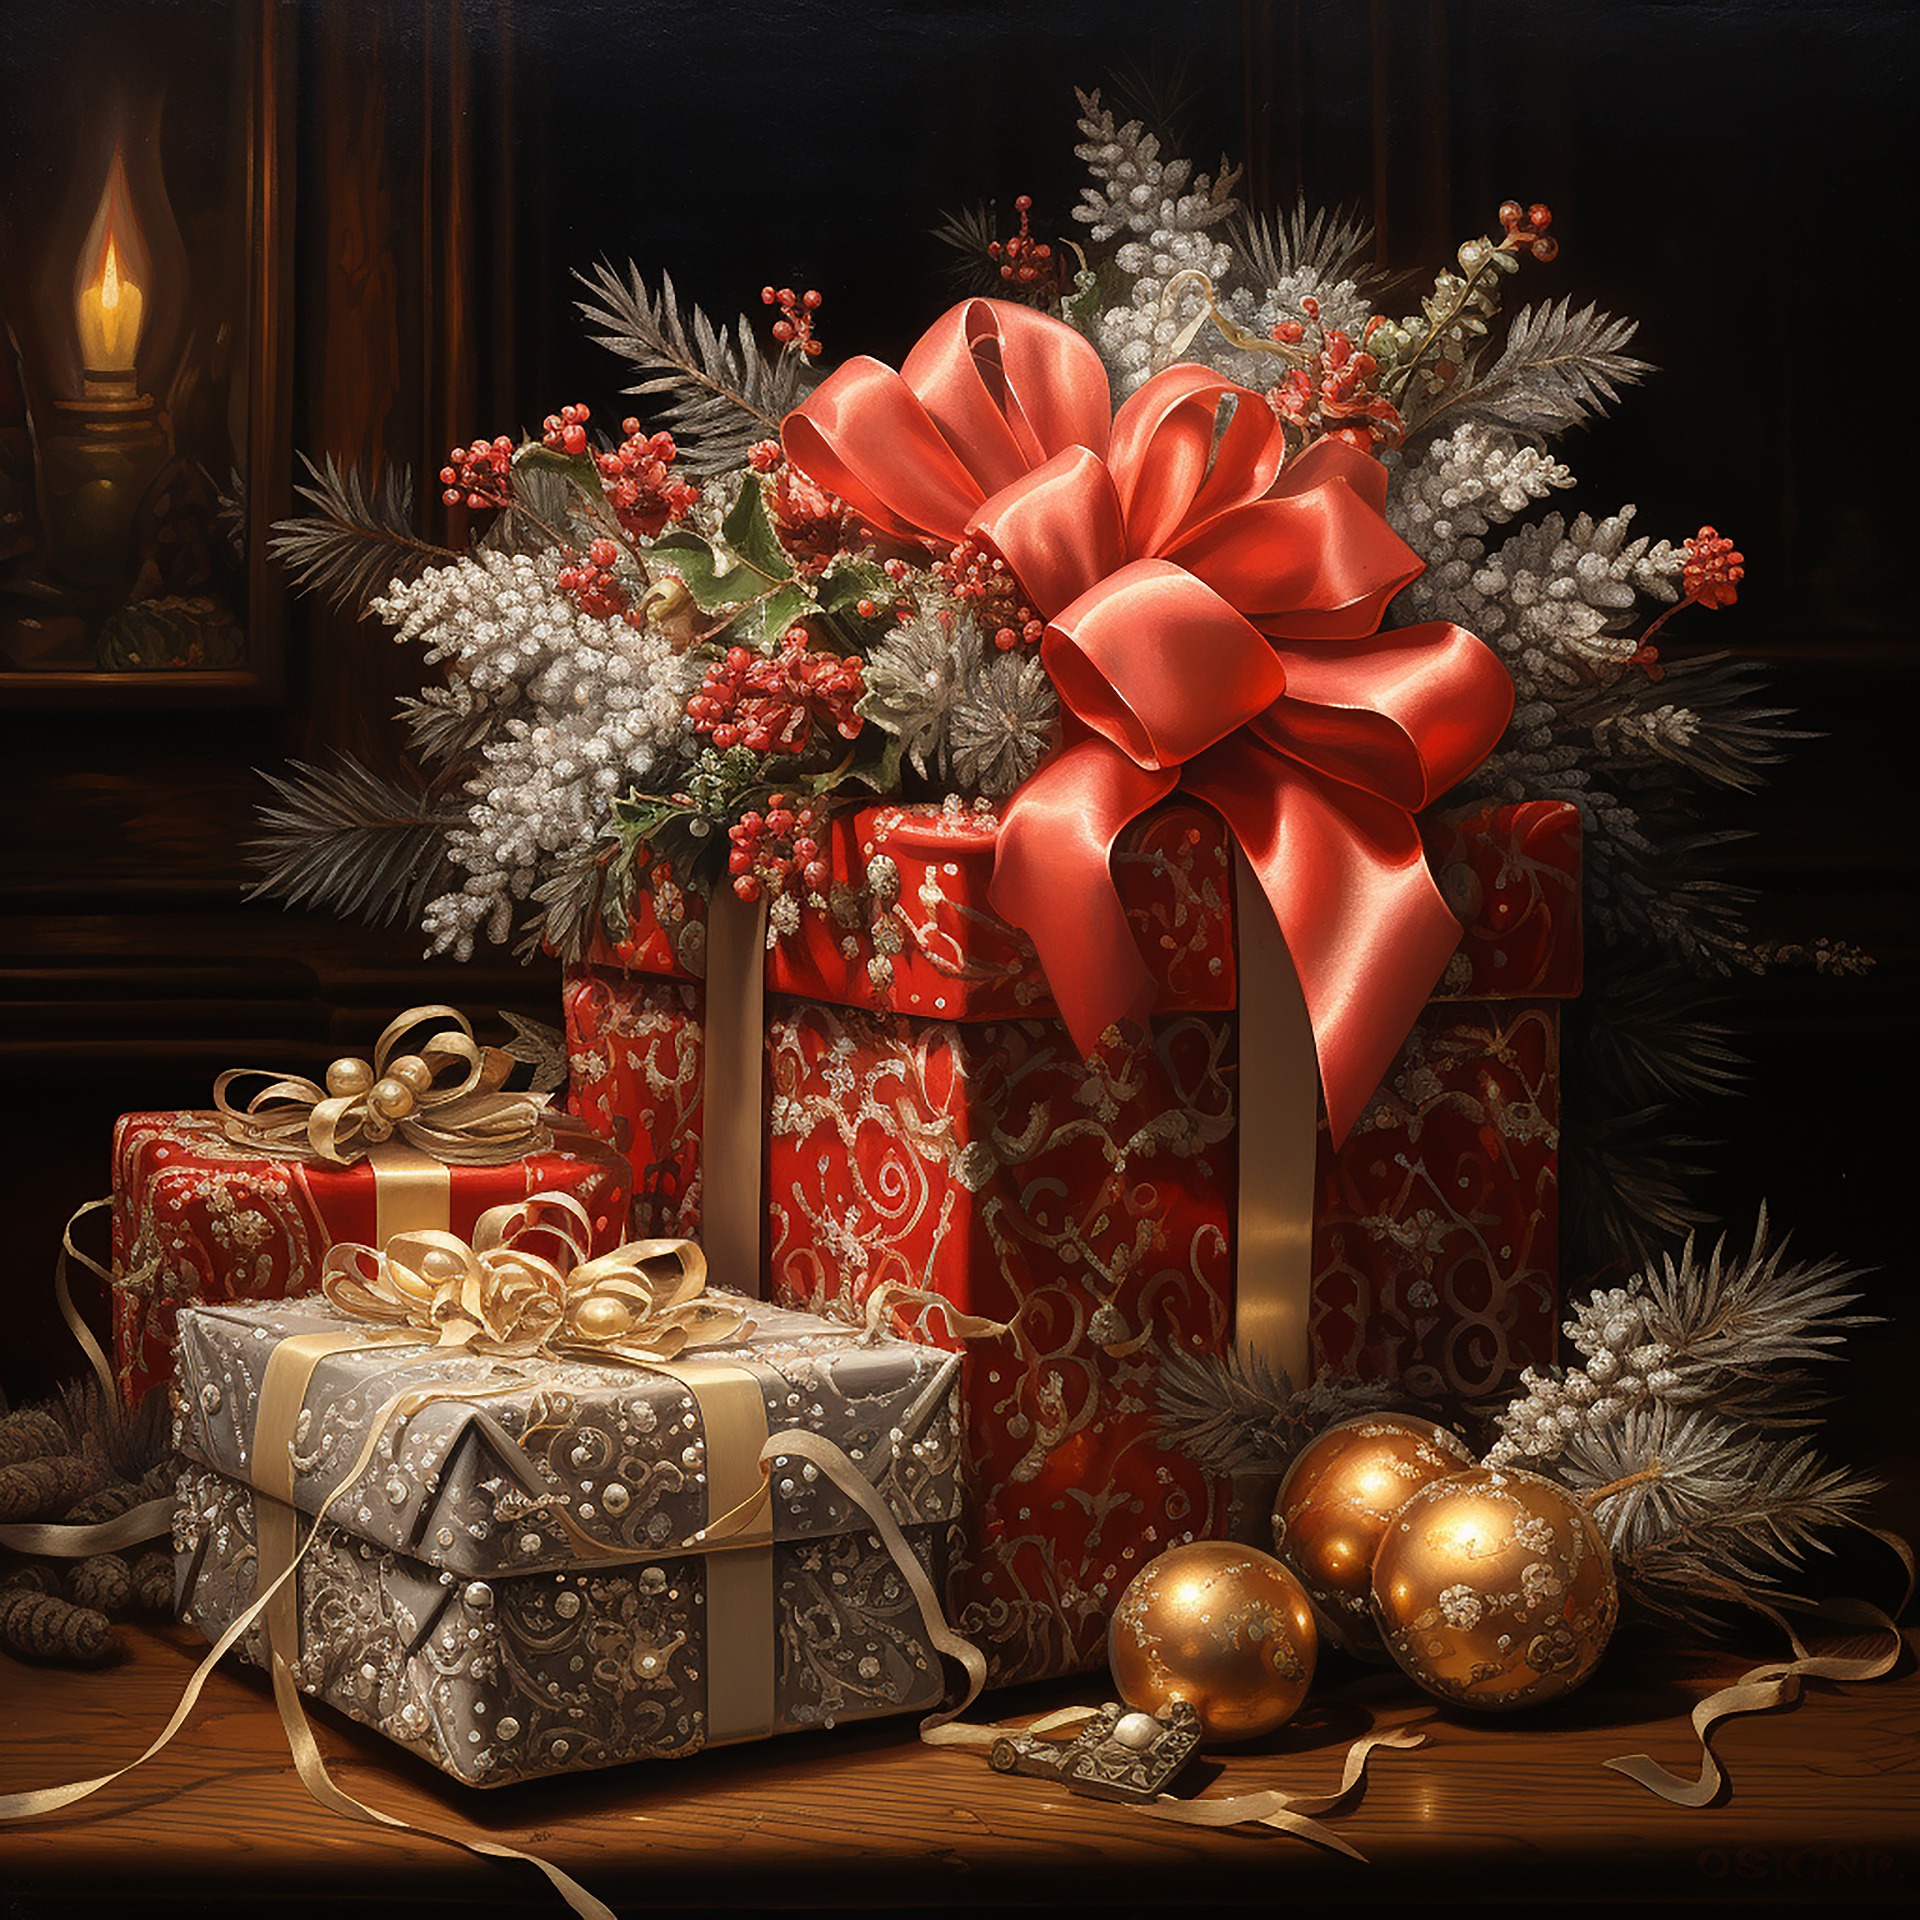 Des boîtes cadeaux soigneusement emballées | Source : Pixababy